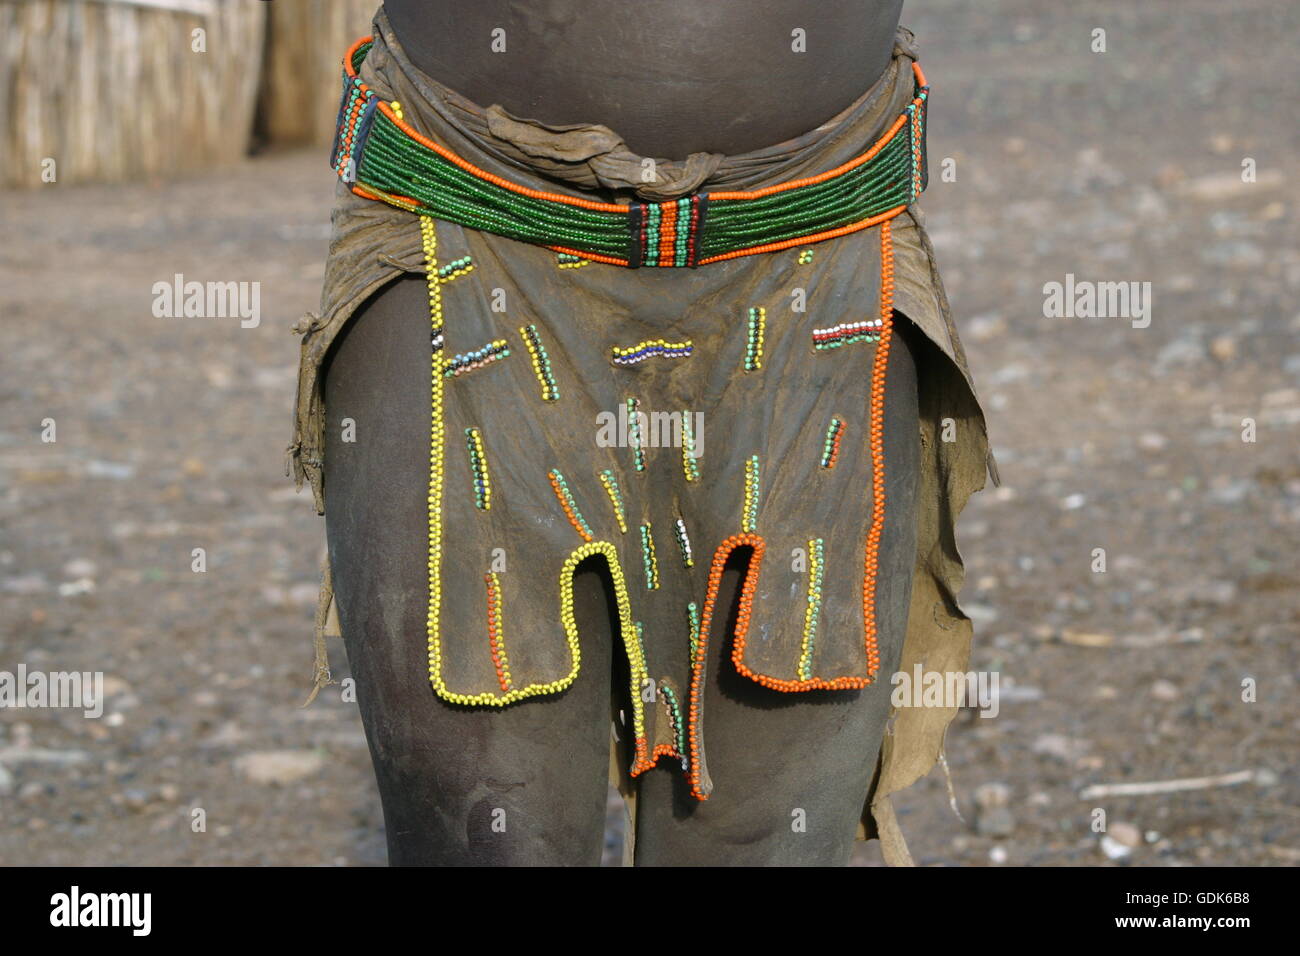 Leather loincloth, Sudan Stock Photo